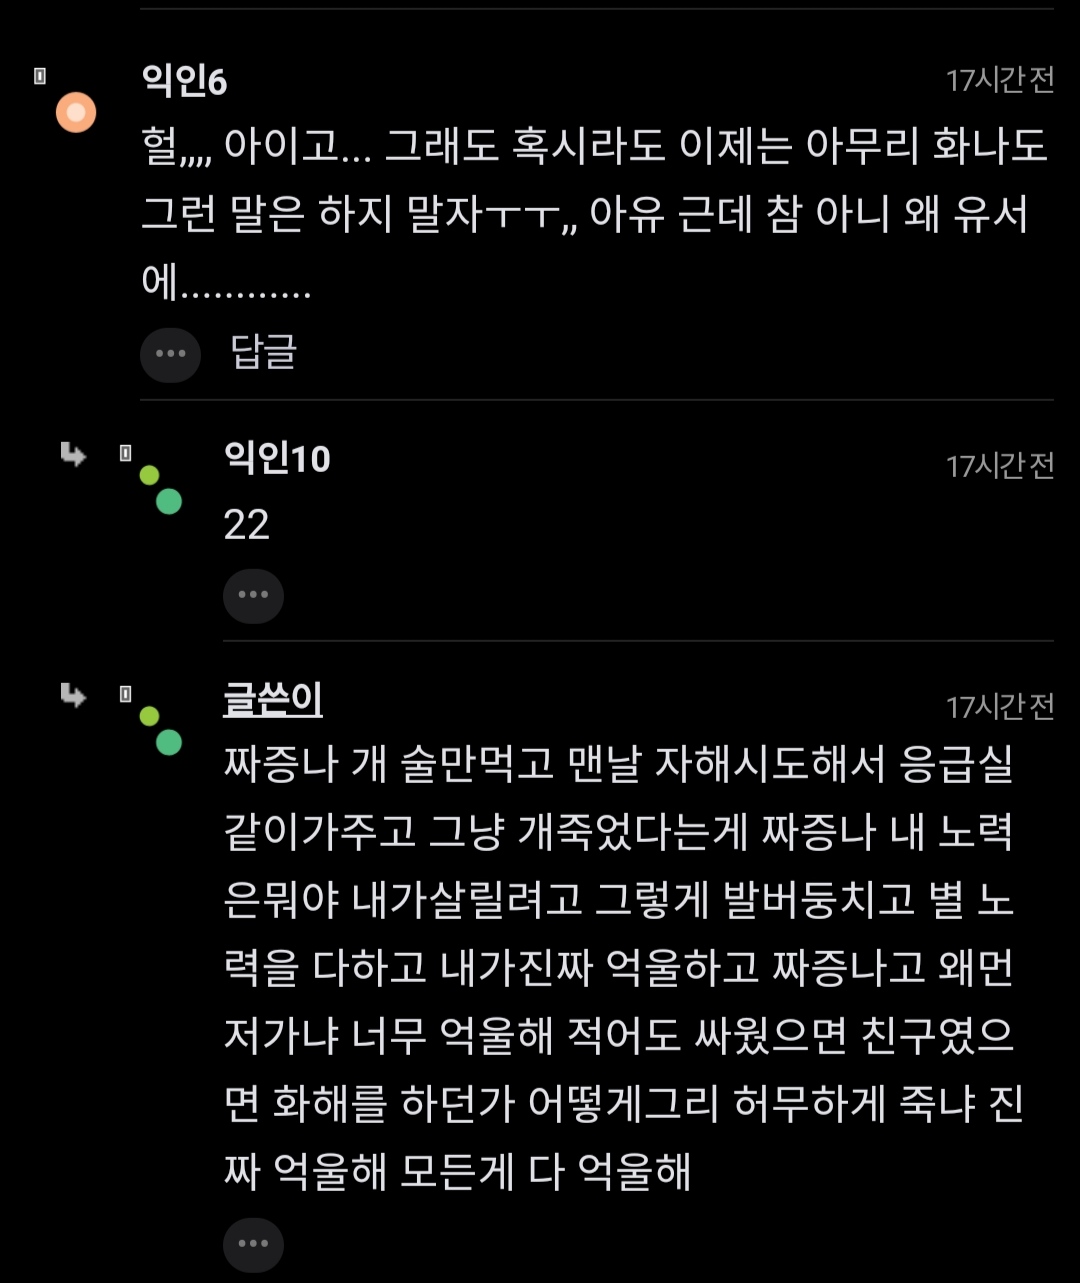 "나땜에 자살했다는데 이거 처벌받아? ㅋㅋ".jpg